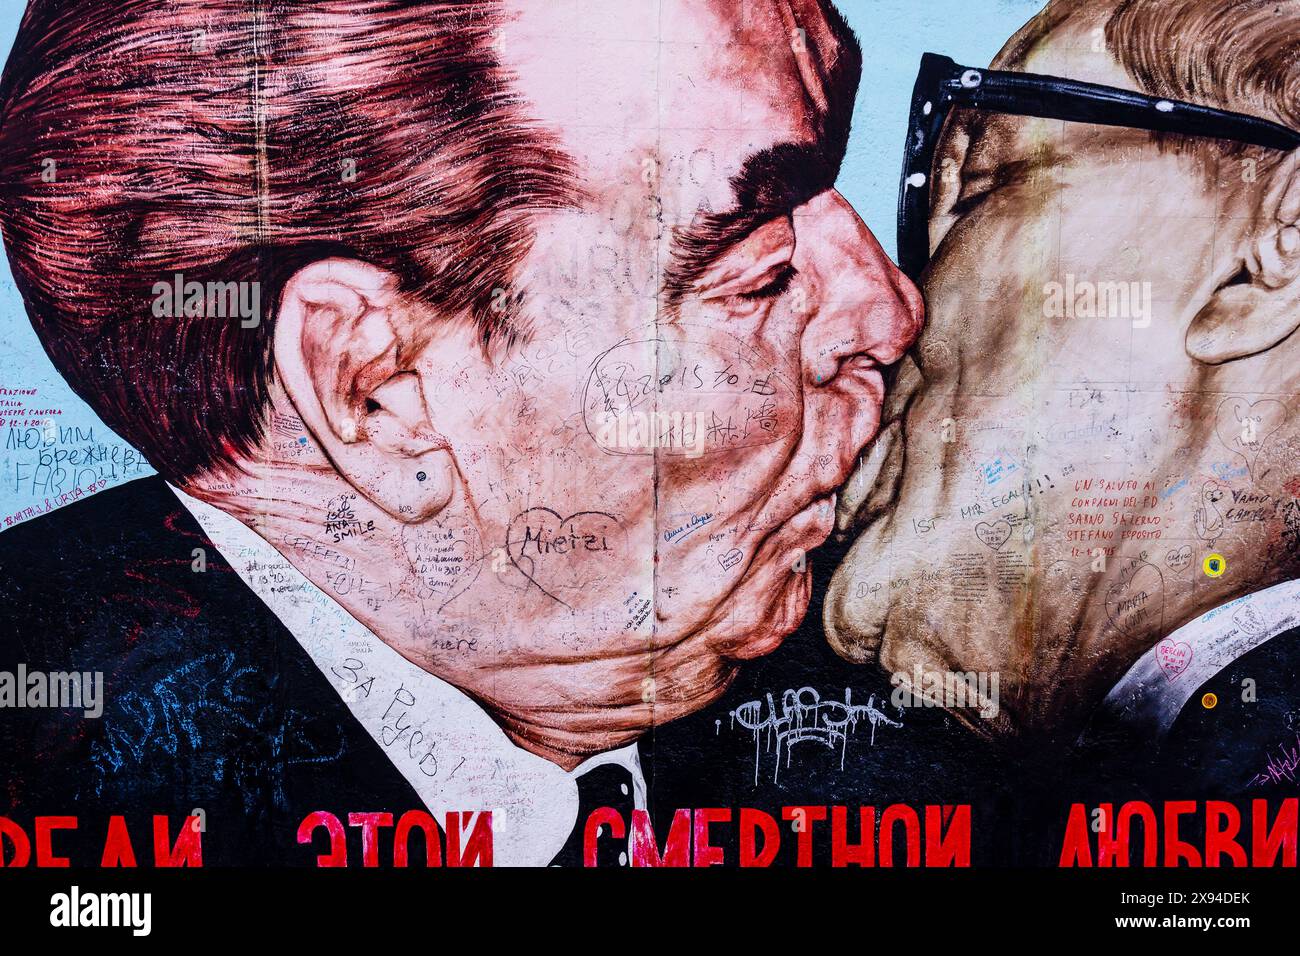 Il bacio dei Fratelli, mio Dio, aiutami a sopravvivere a questo amore mortale, dell'artista russo Dmitri Vrubel, muro di Berlino - Berliner Mauer-, Berlino, Germania Foto Stock